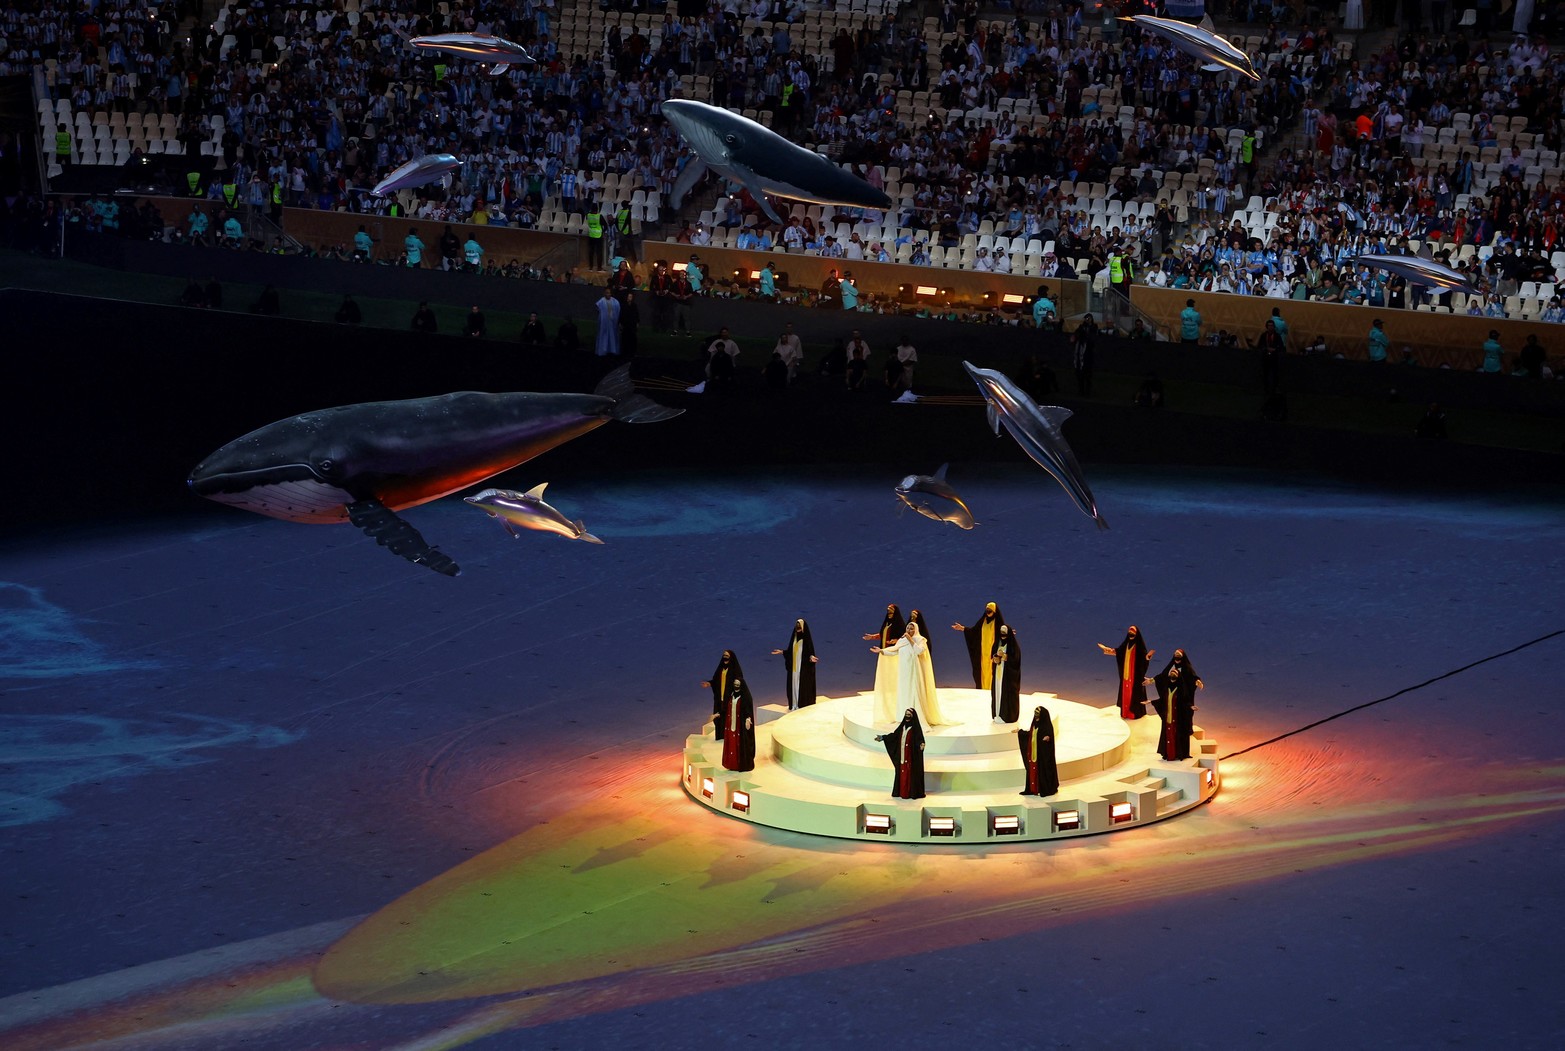 La fina de la Copa del Mundo de Fútbol, en Qatar la juegan Argentina y Francia. Las fotos del cierre del evento futbolero.